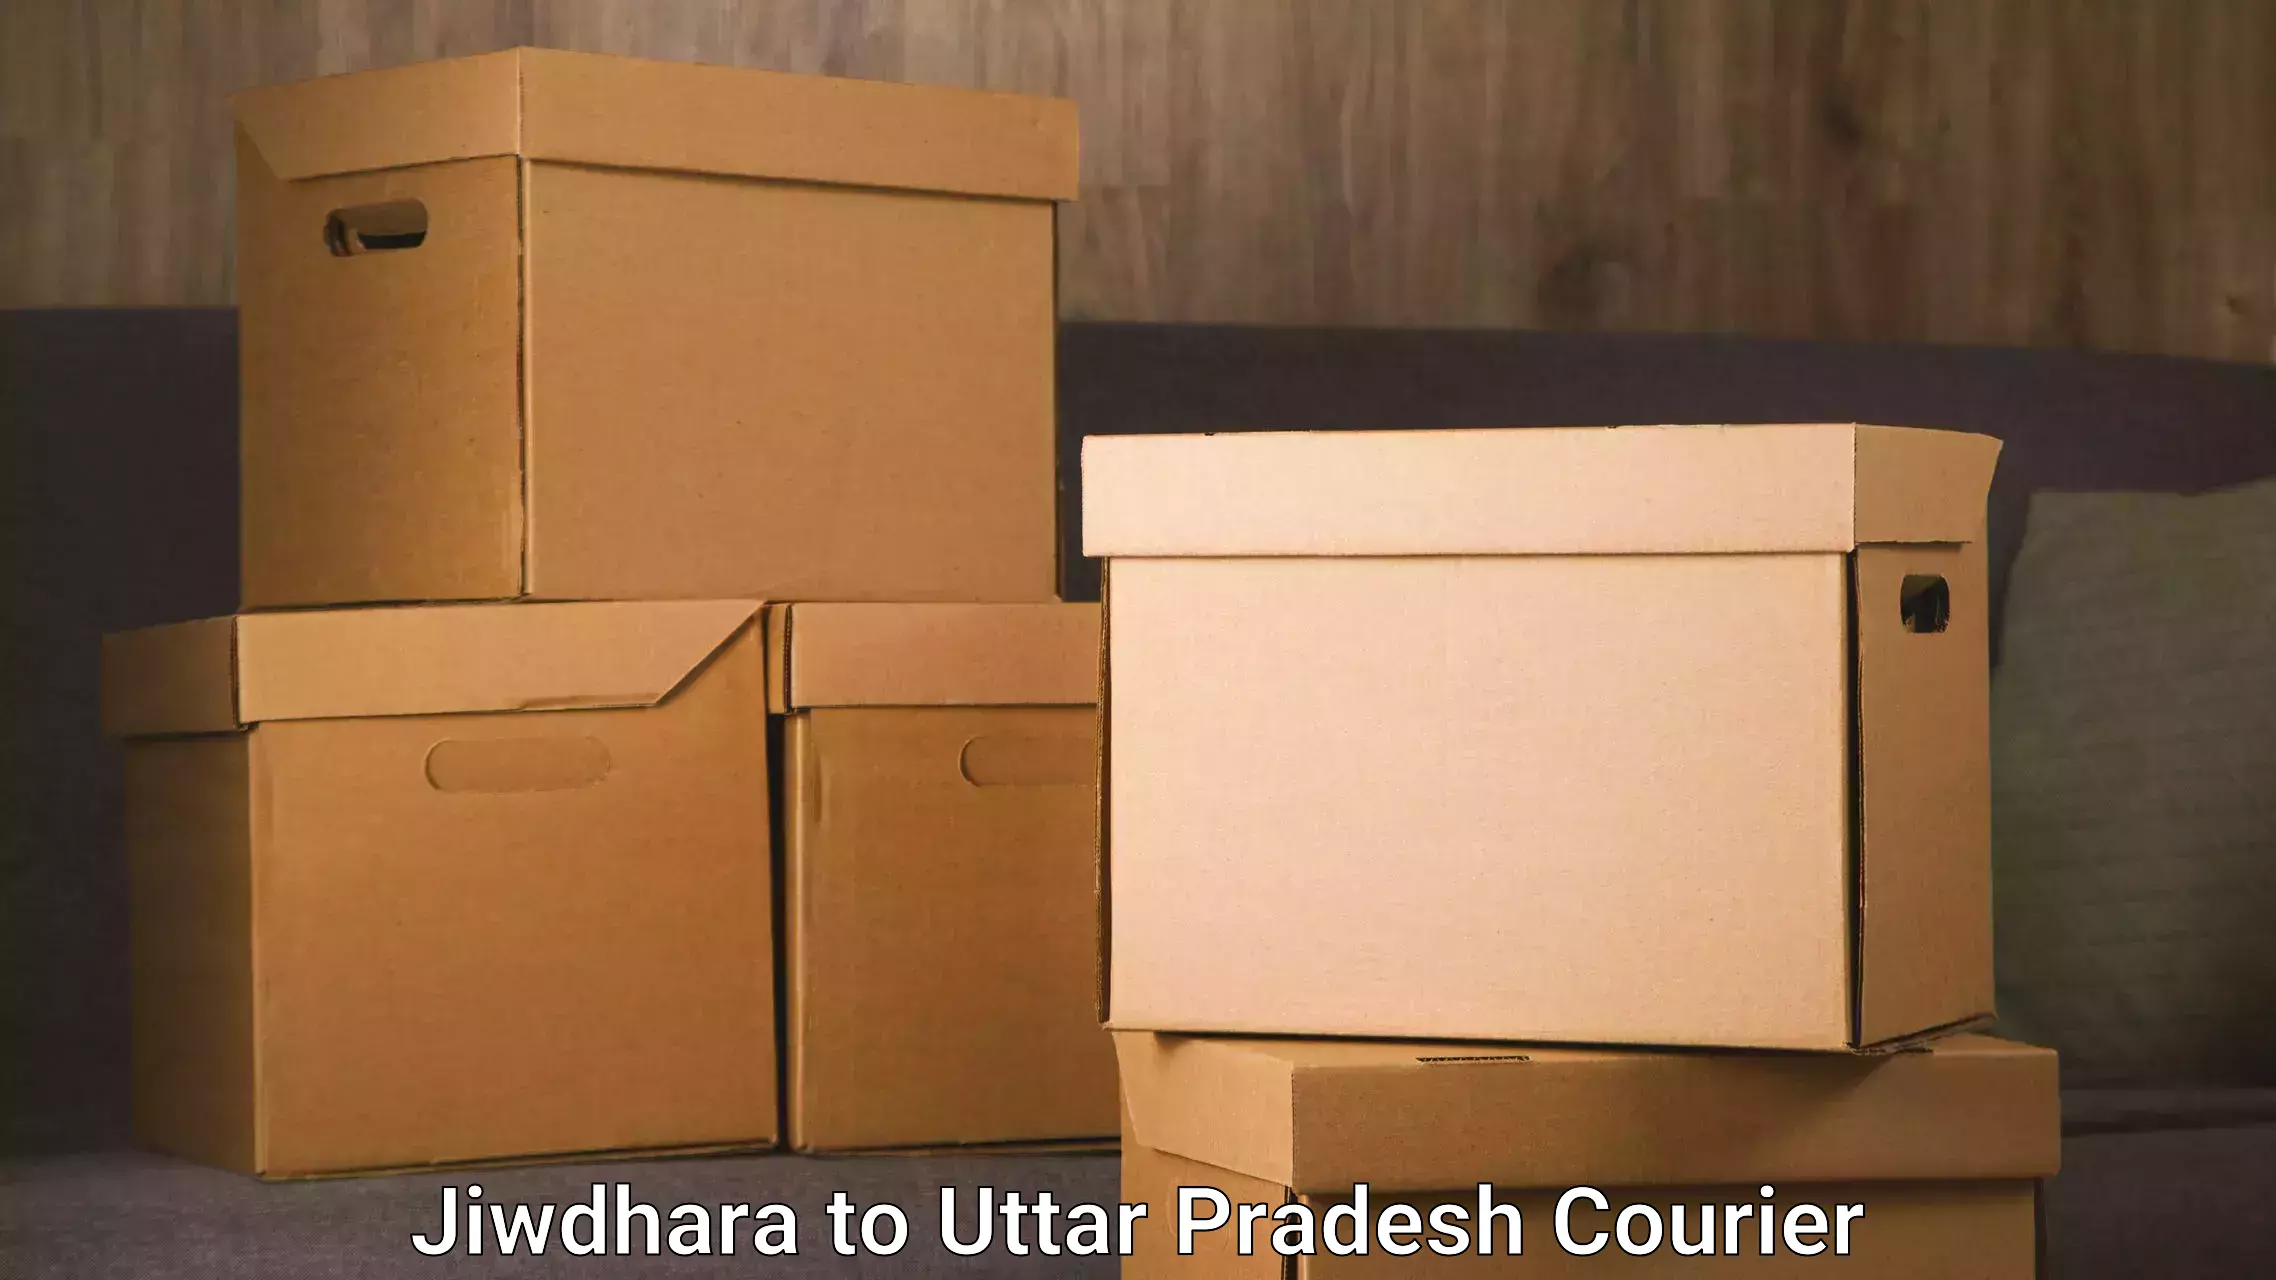 Furniture moving experts in Jiwdhara to Uttar Pradesh